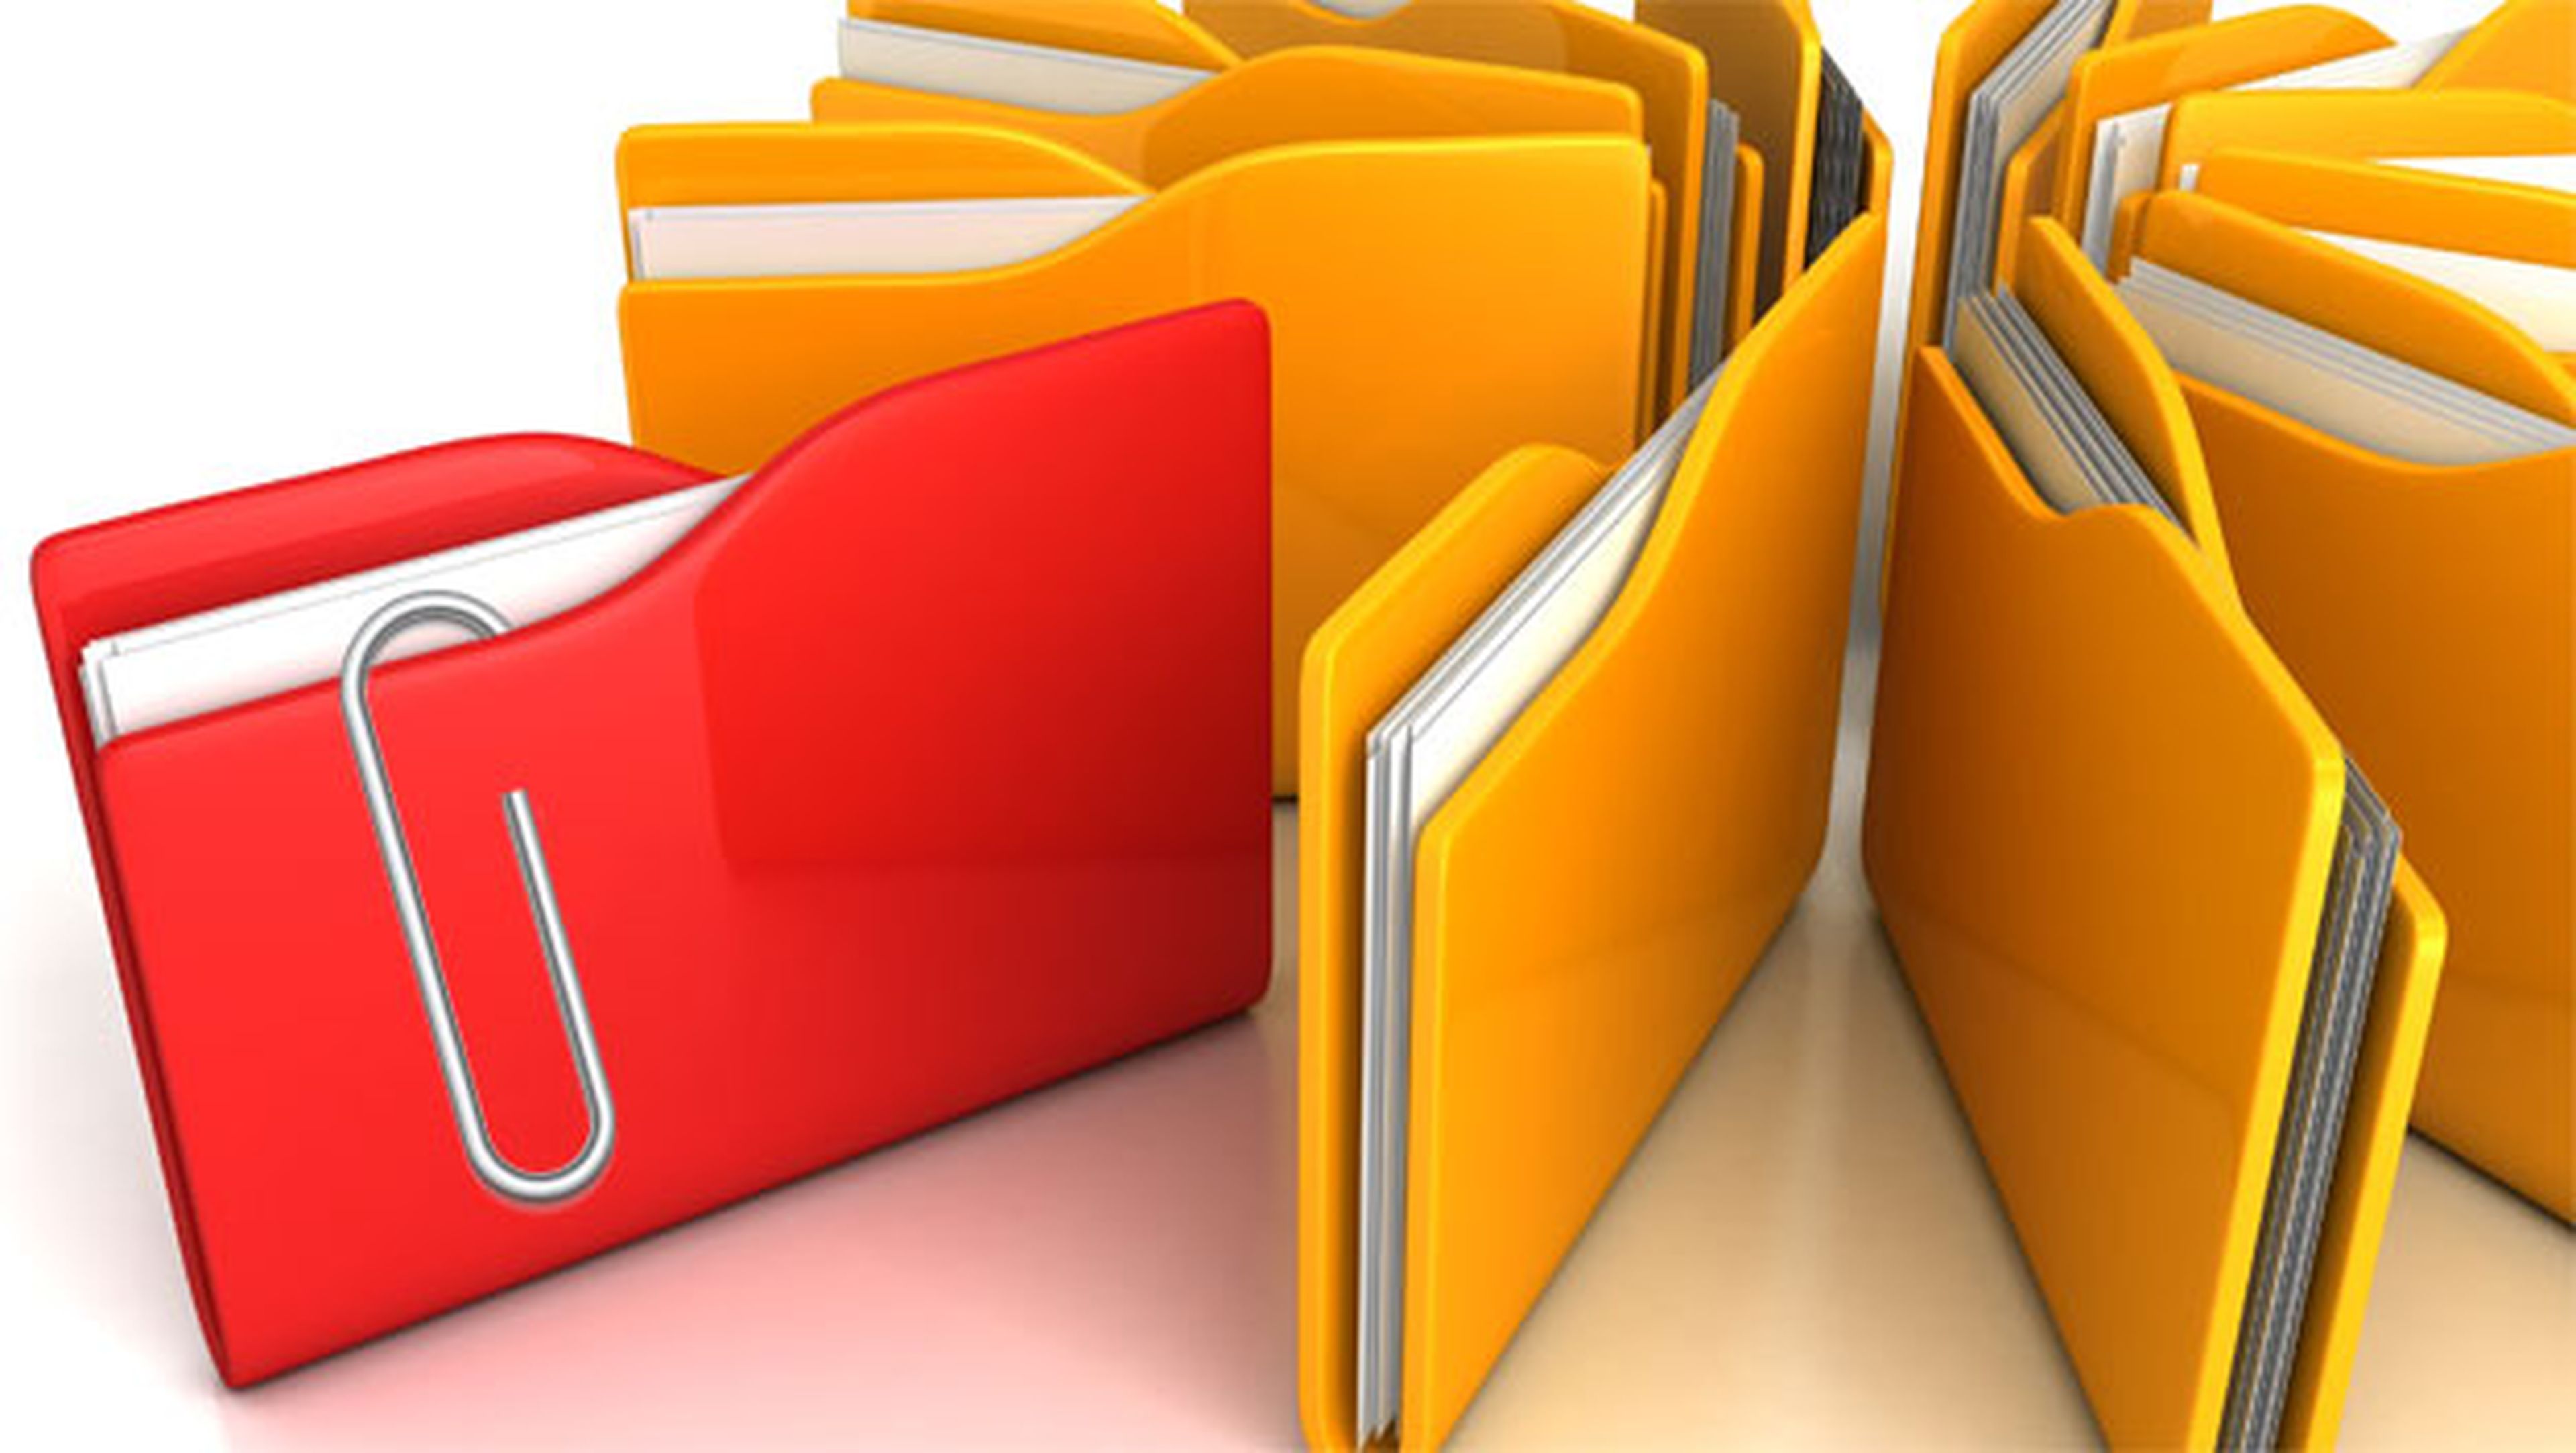 Adjunta archivos grandes desde tu cliente de correo habitual